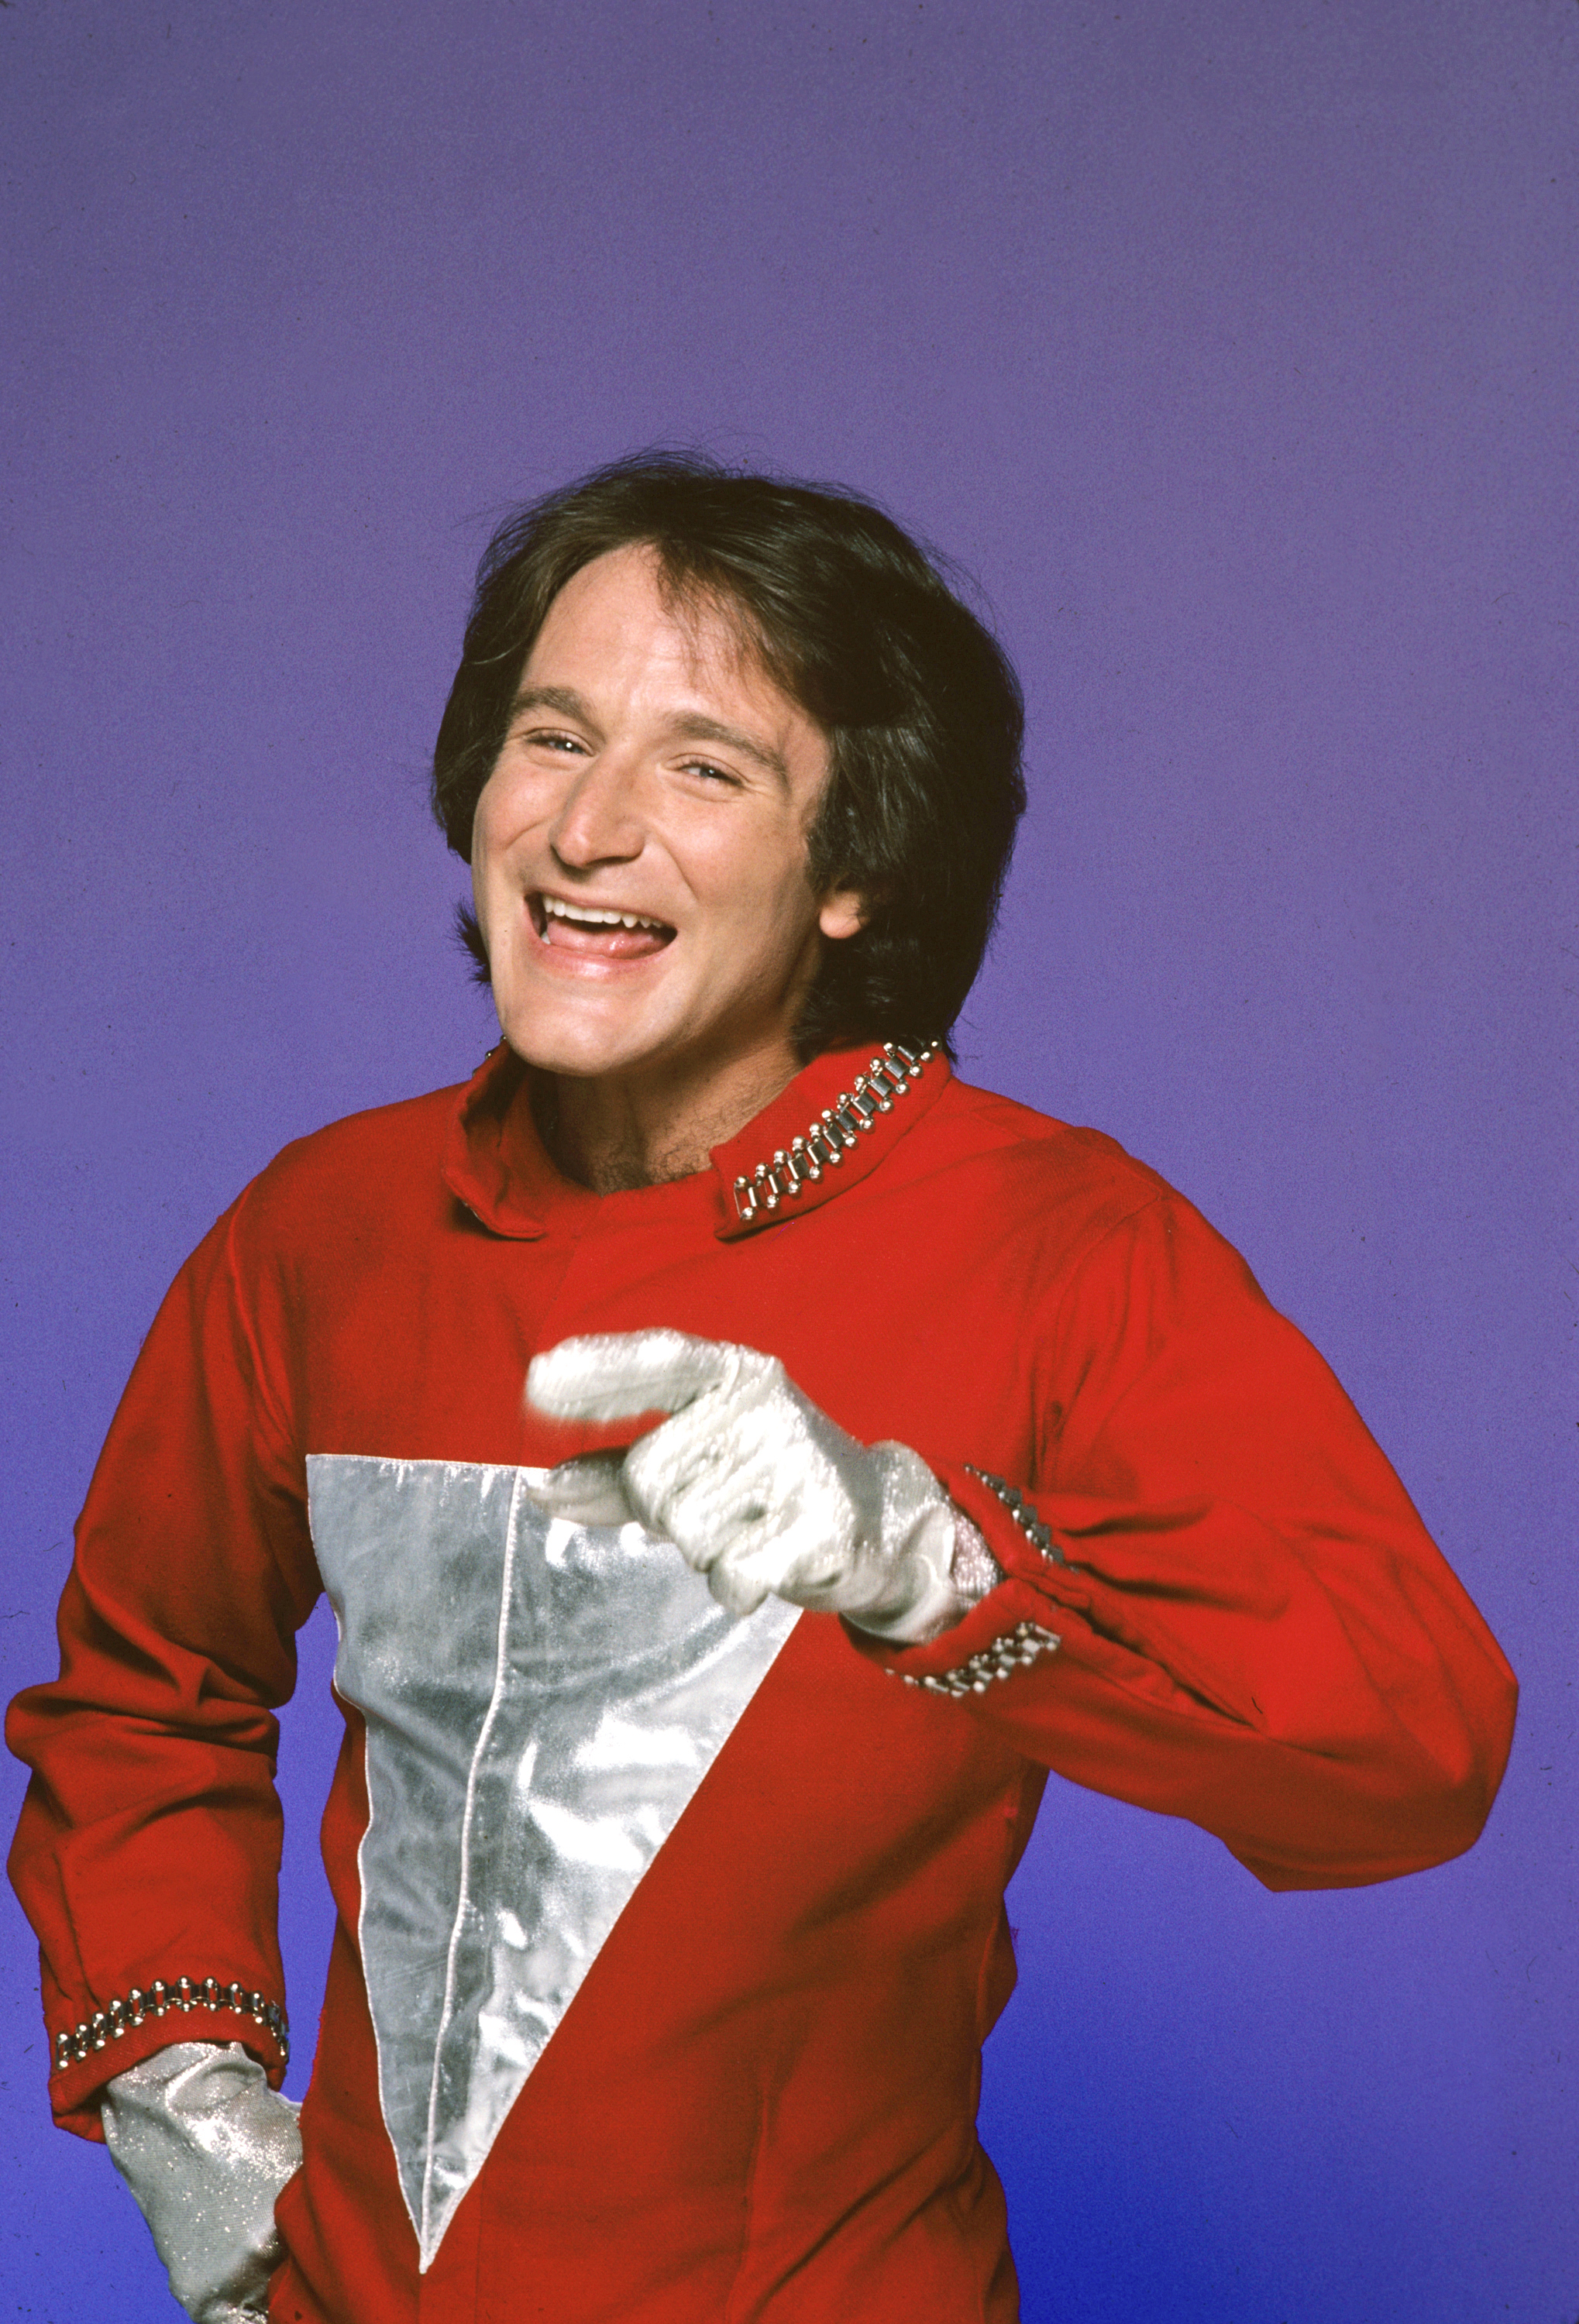 Robin Williams bei "Mork und Mindy" im Jahr 1978 | Quelle: Getty Images